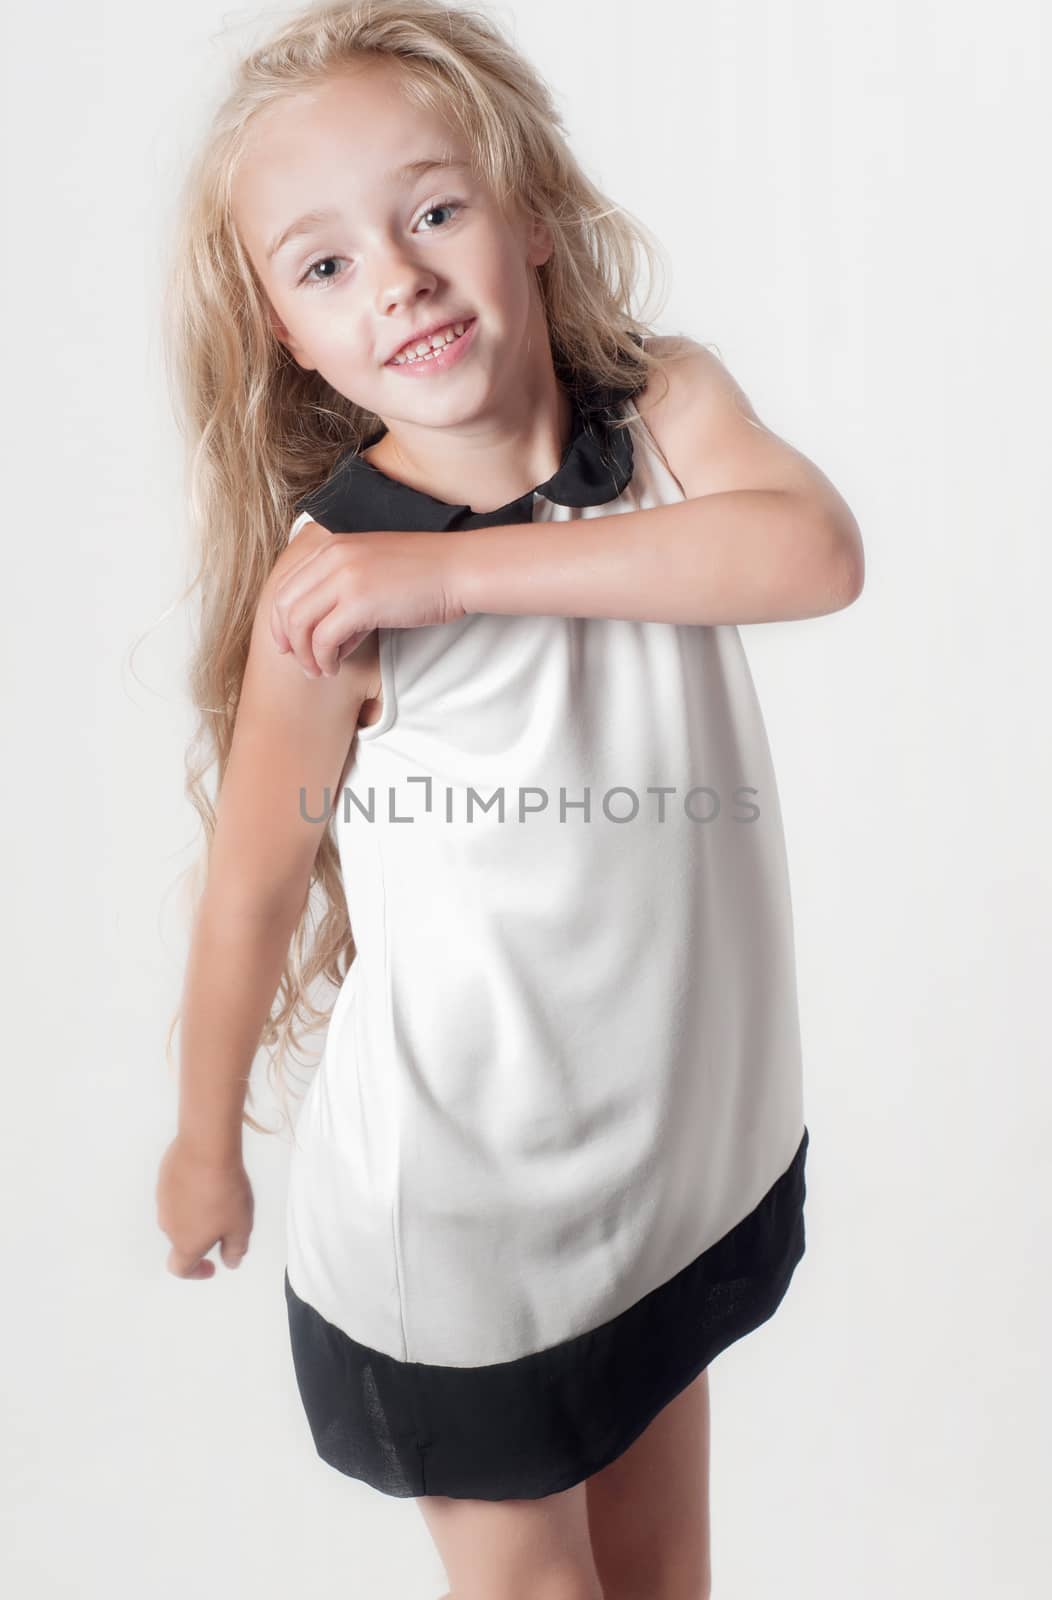 Little girl in white dress by anytka